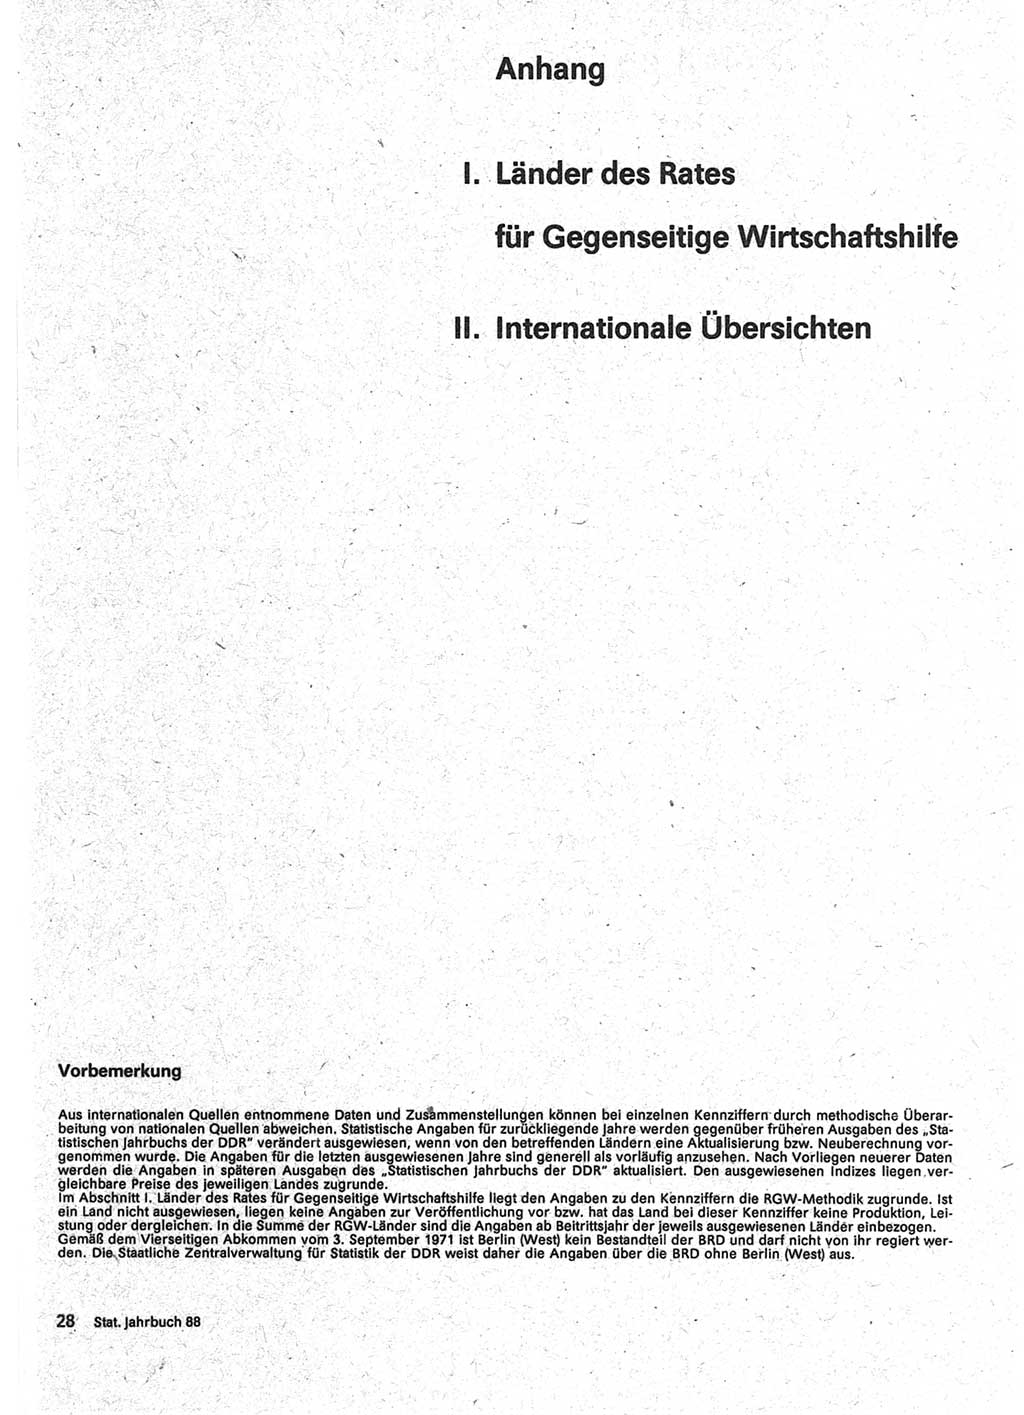 Statistisches Jahrbuch der Deutschen Demokratischen Republik (DDR) 1988, Seite 1 (Stat. Jb. DDR 1988, S. 1)